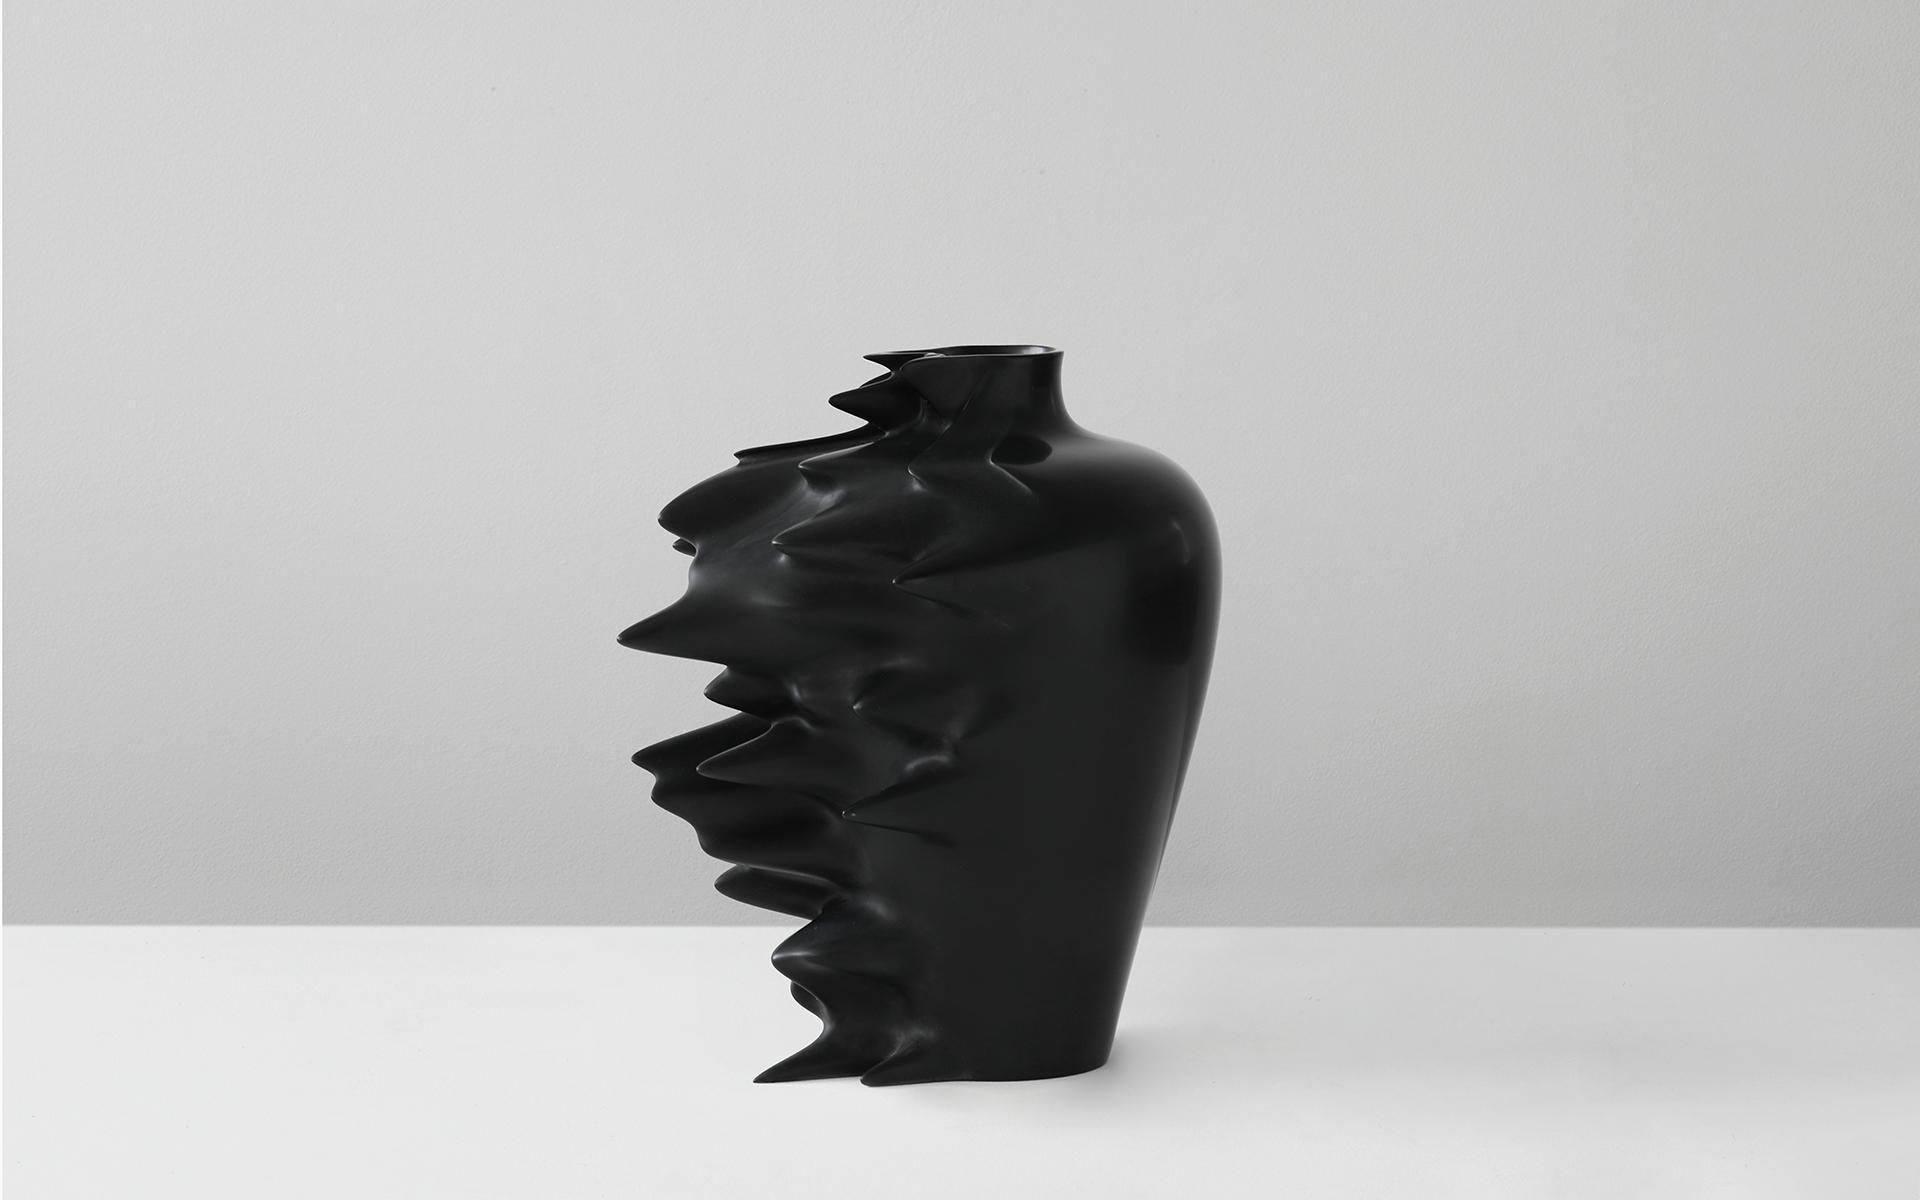 L'archétype d'un vase Ming figé dans l'accélération numérique.
Ces vases sont disponibles en deux couleurs différentes de Corian : blanc 